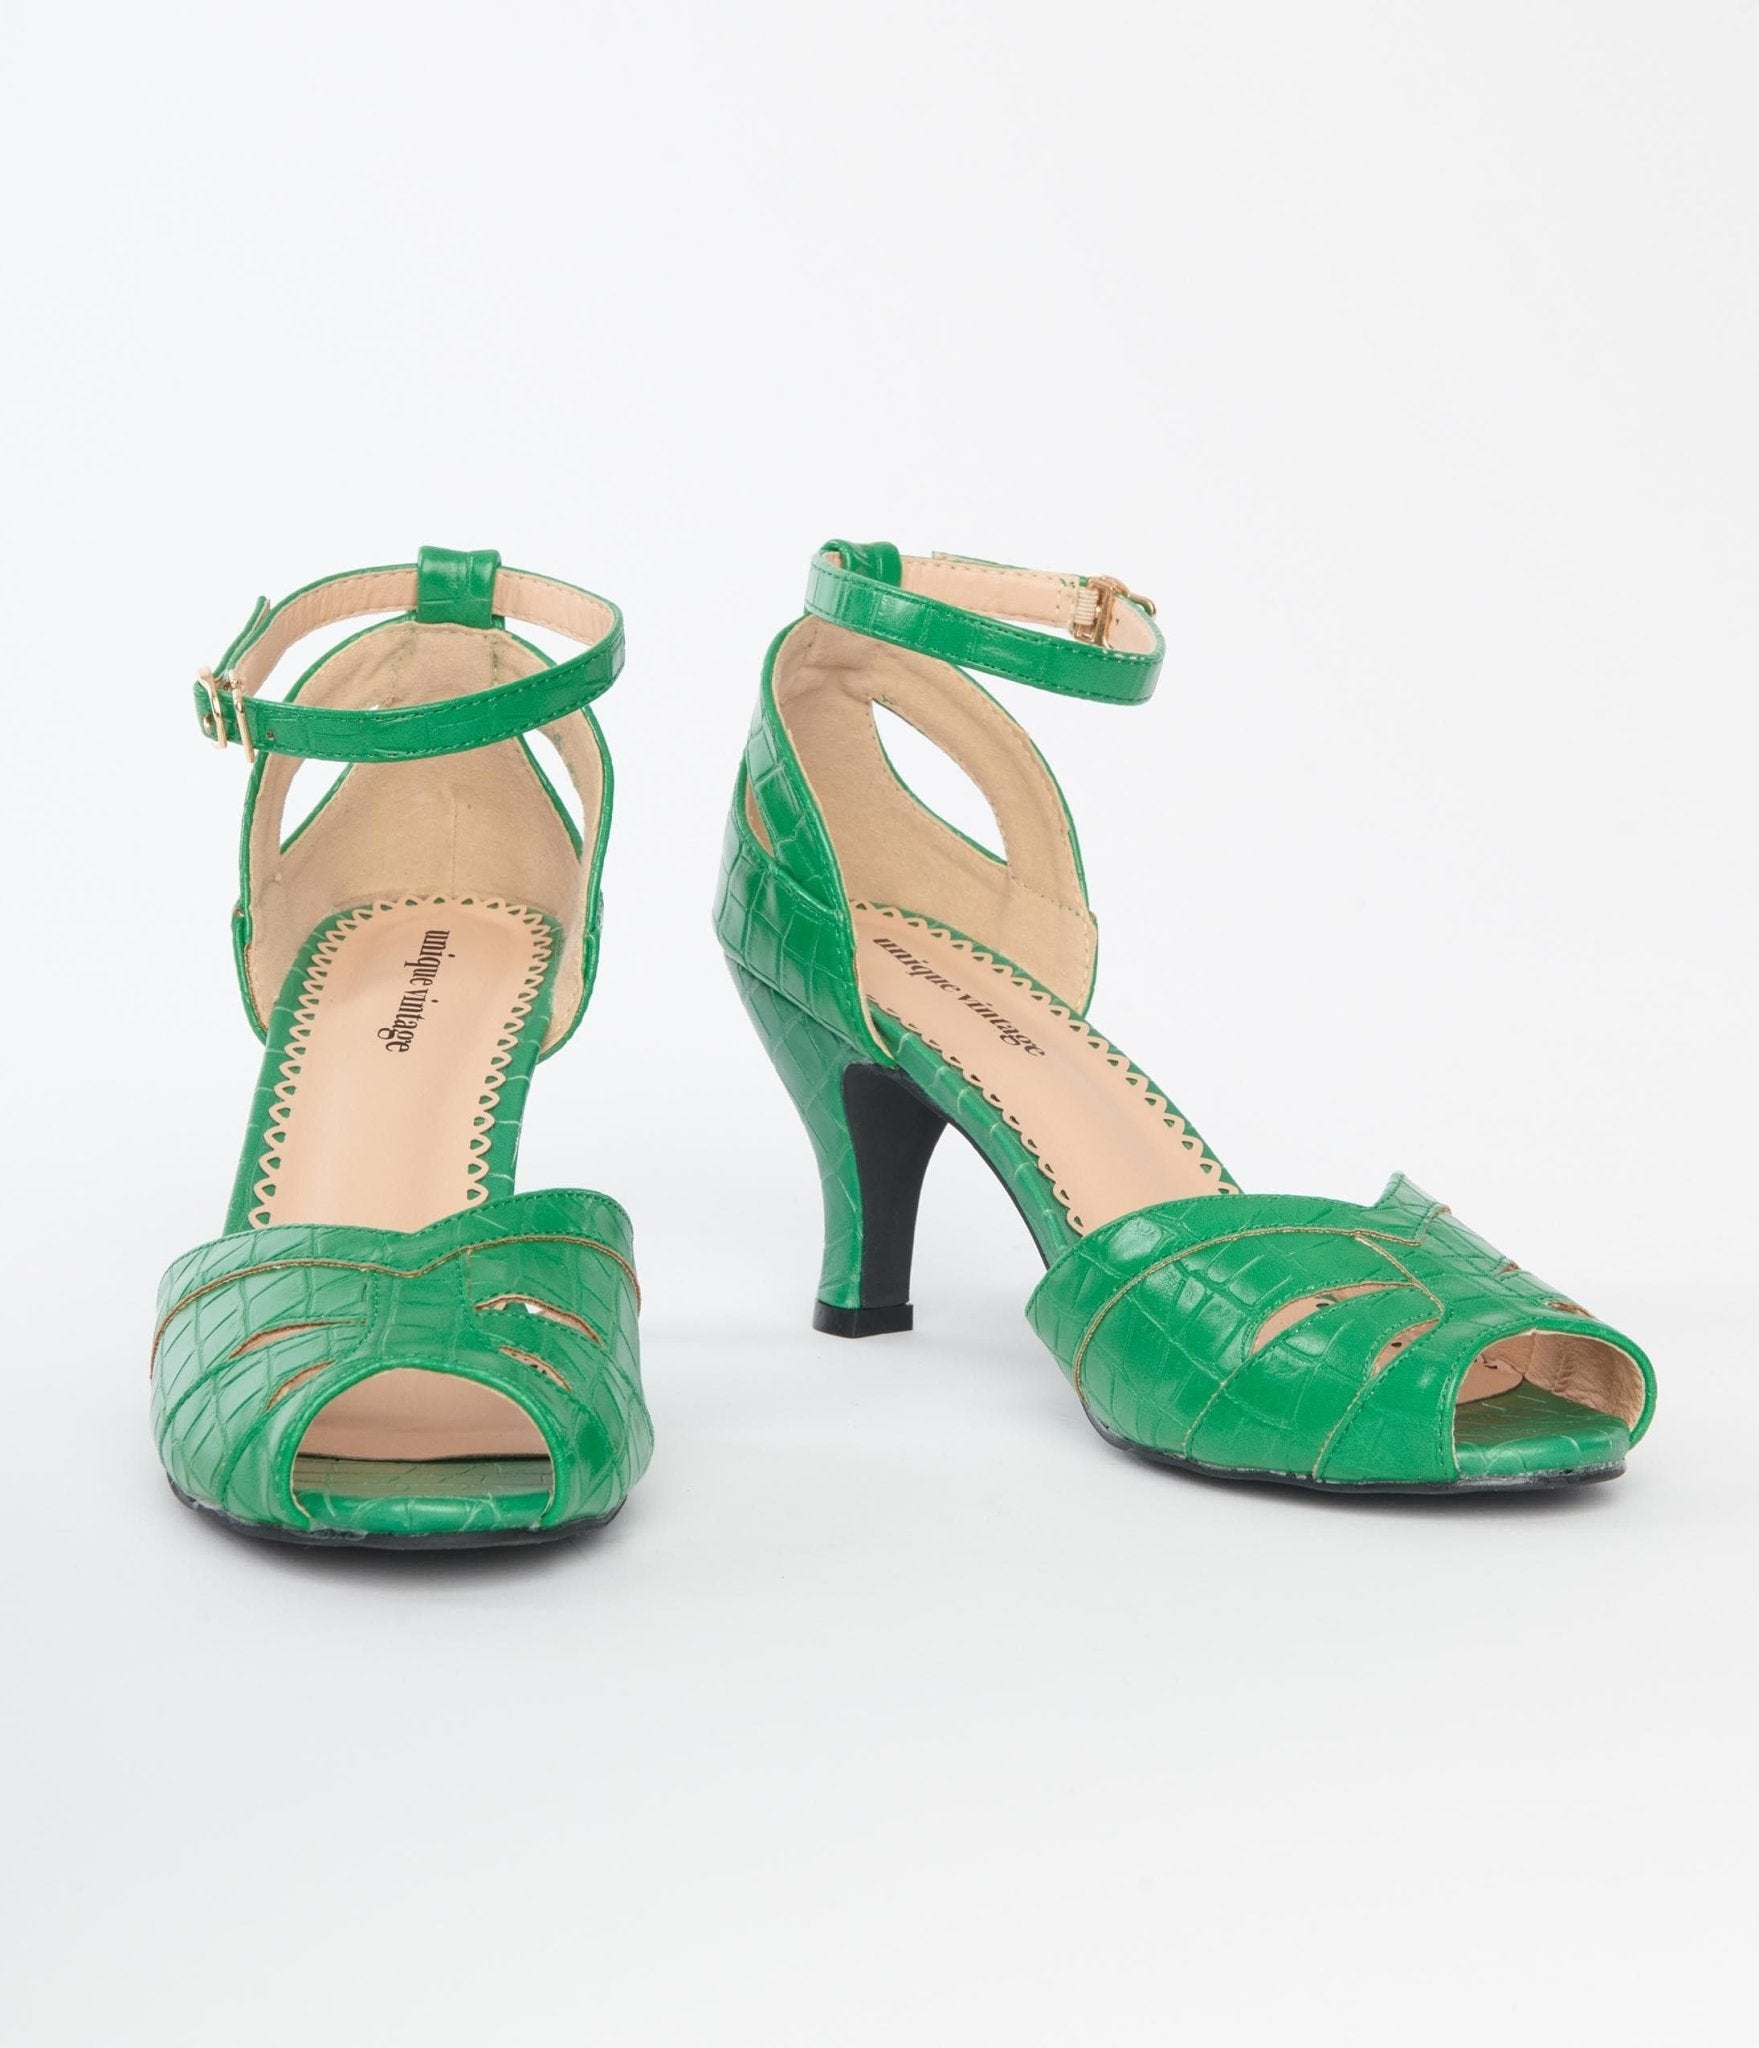 Green Heels | Green Heels Online | Buy Women's Green Heels Australia |- THE  ICONIC